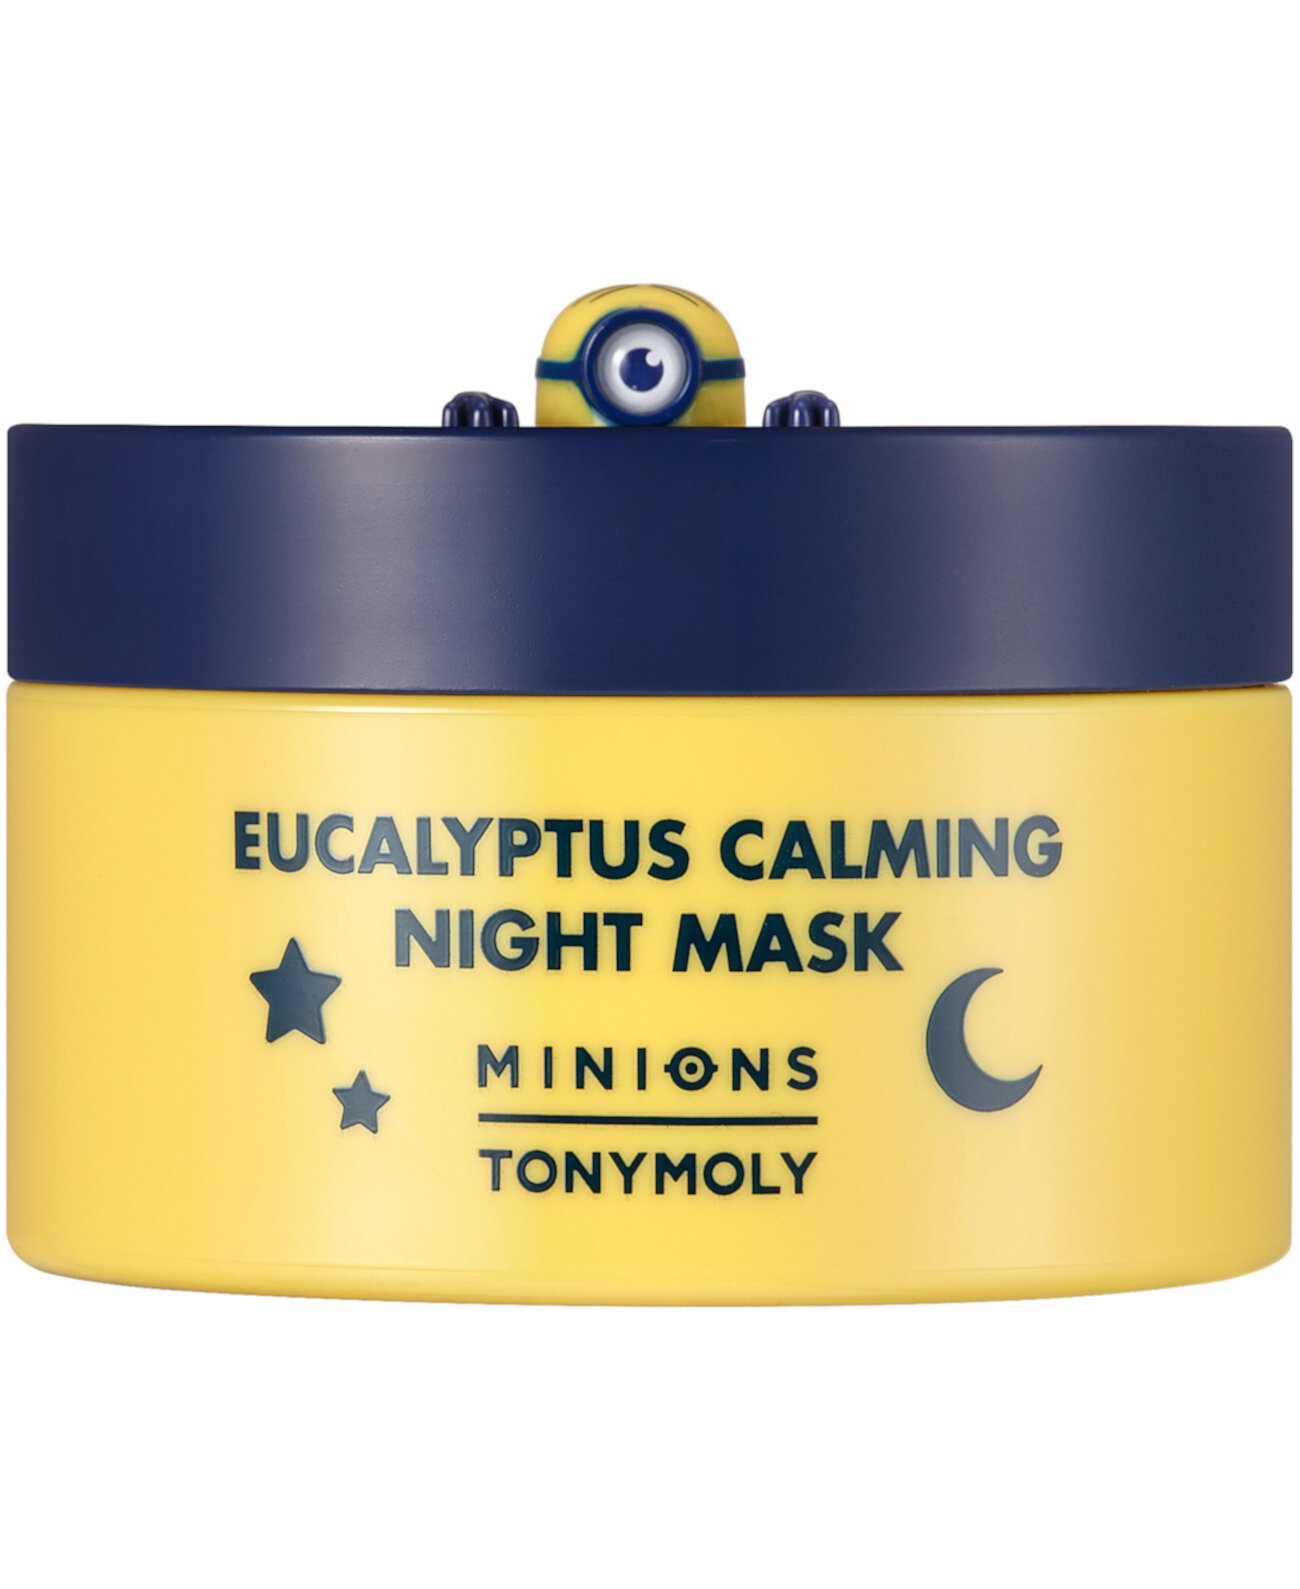 Minions Eucalyptus успокаивающая ночная маска, 2,7 унции. TONYMOLY